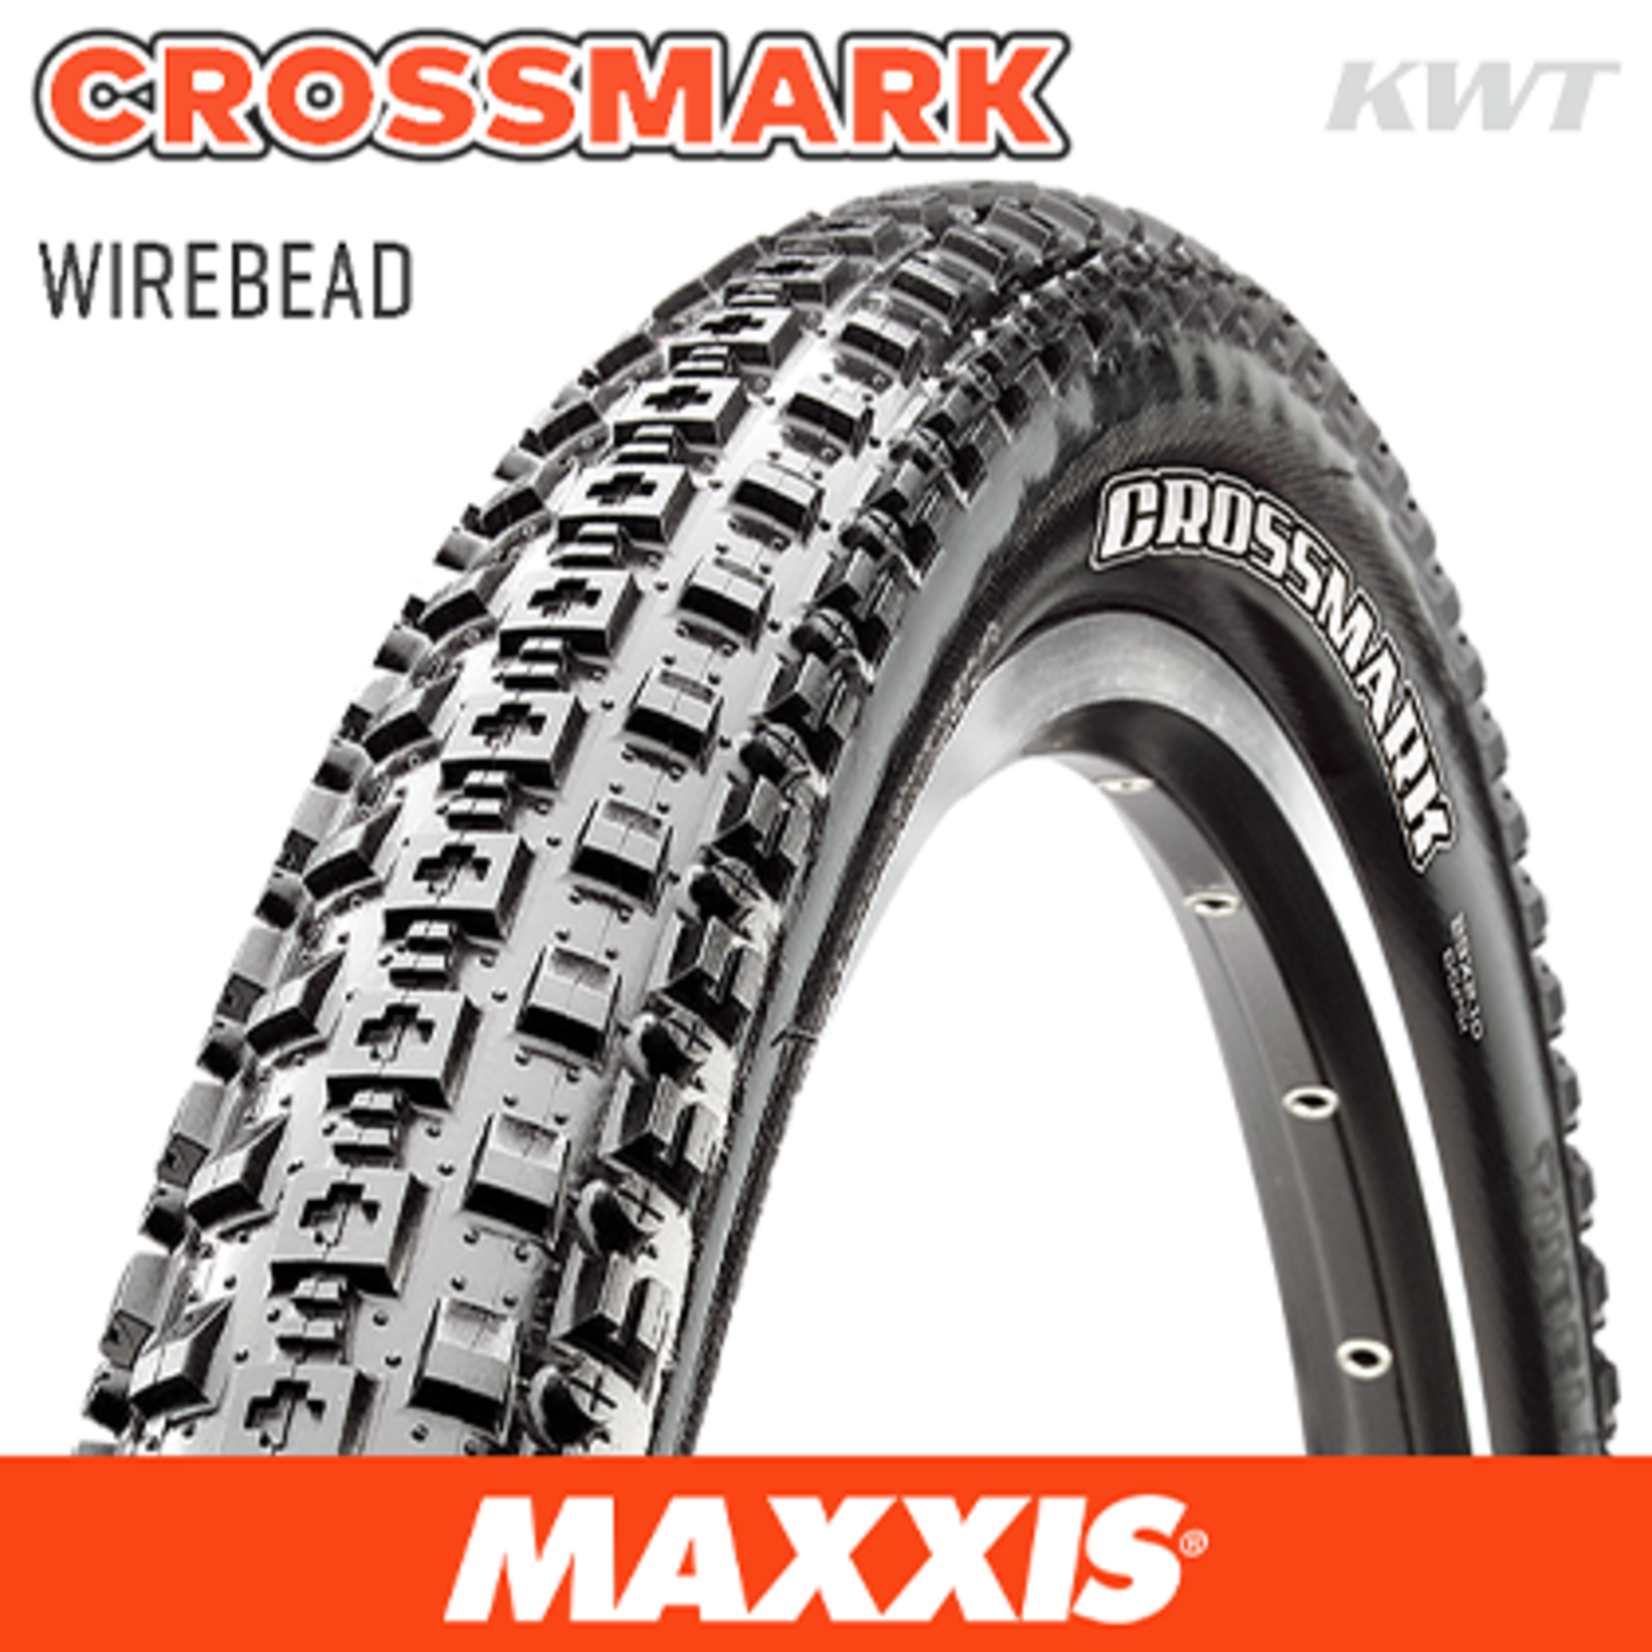 MAXXIS MAXXIS Crossmark 29 X 2.10 - Wire - 60 TPI - Single Compound - Black